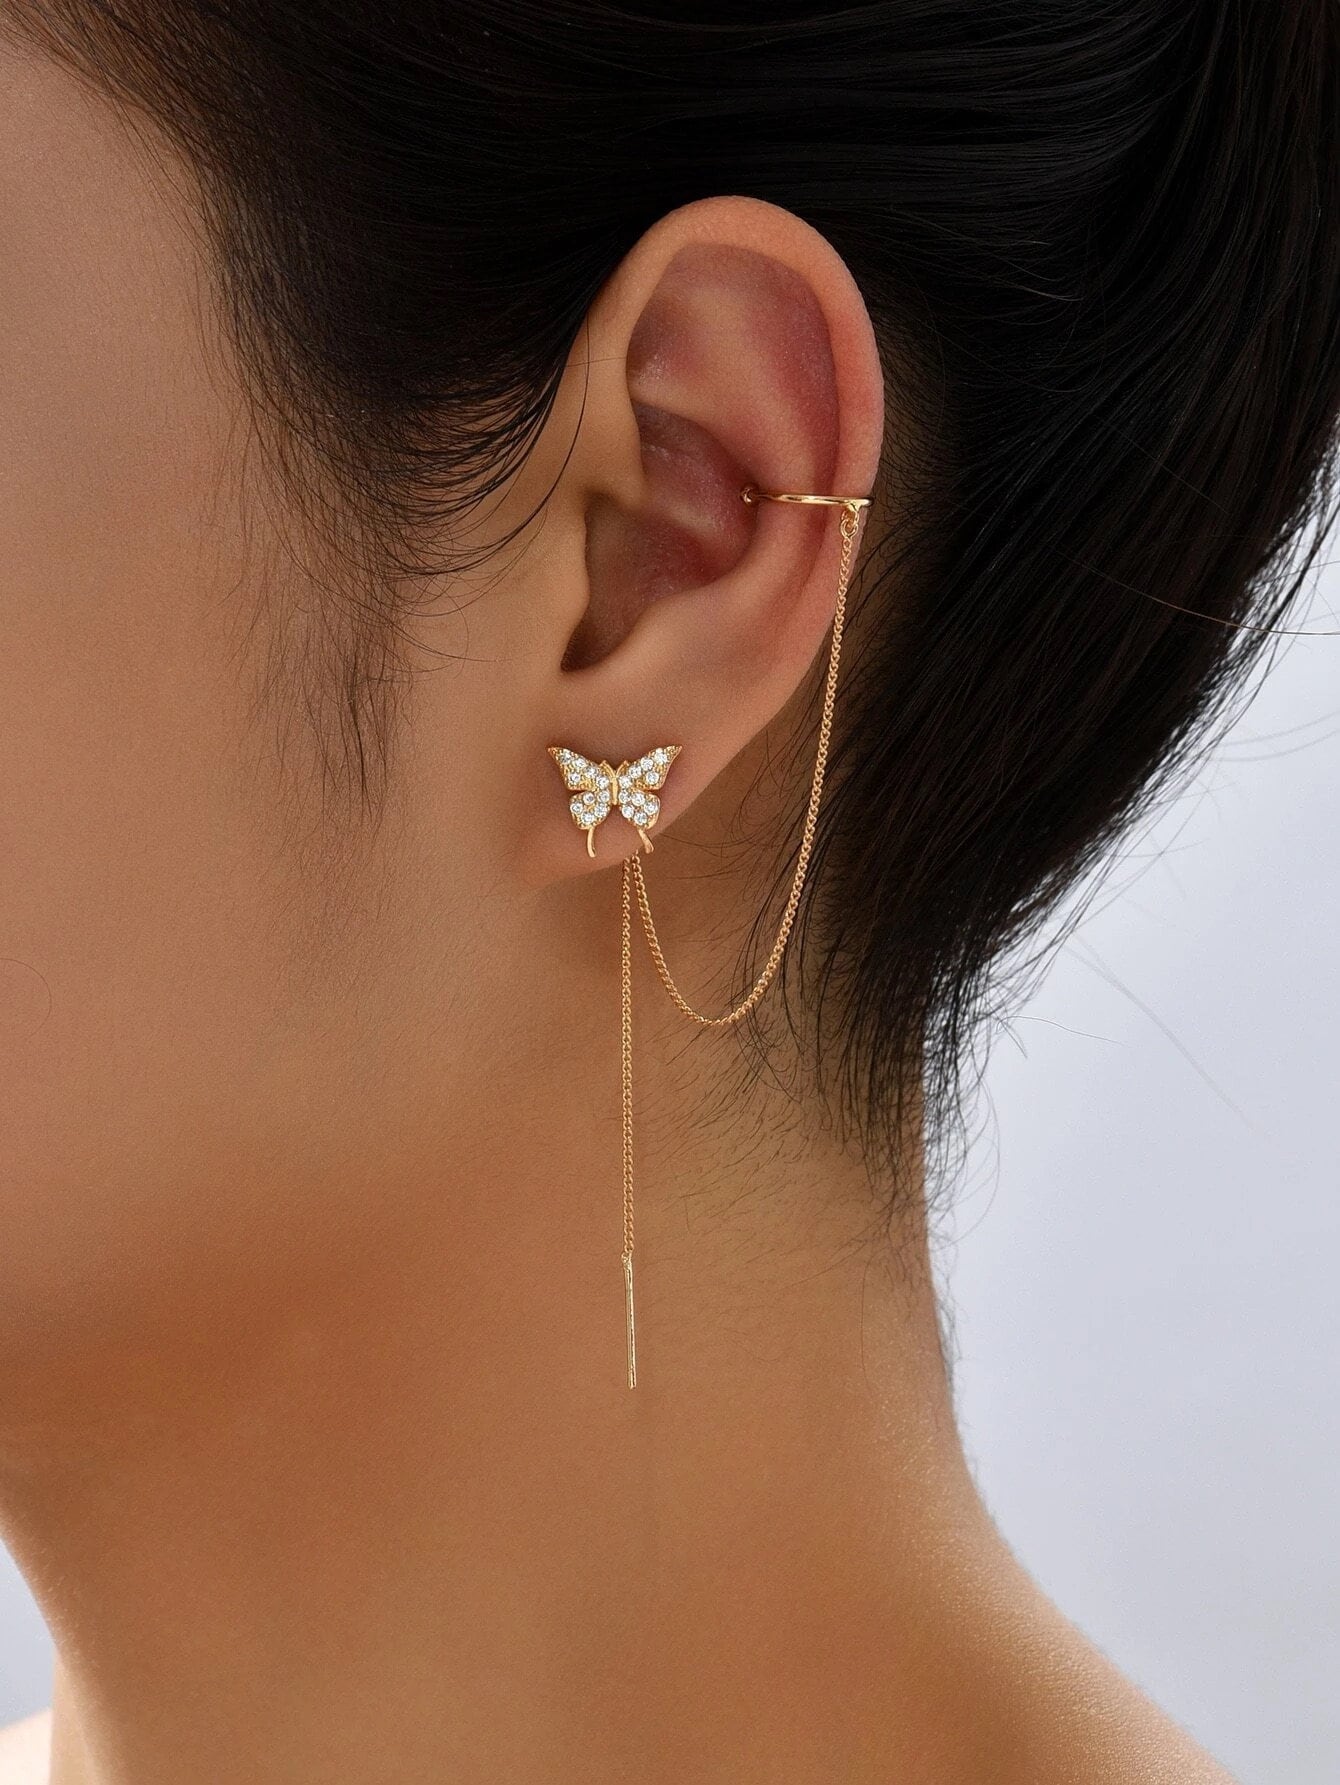 EAR CUFF CHAIN EARRINGS - GOLD – FALA Jewelry